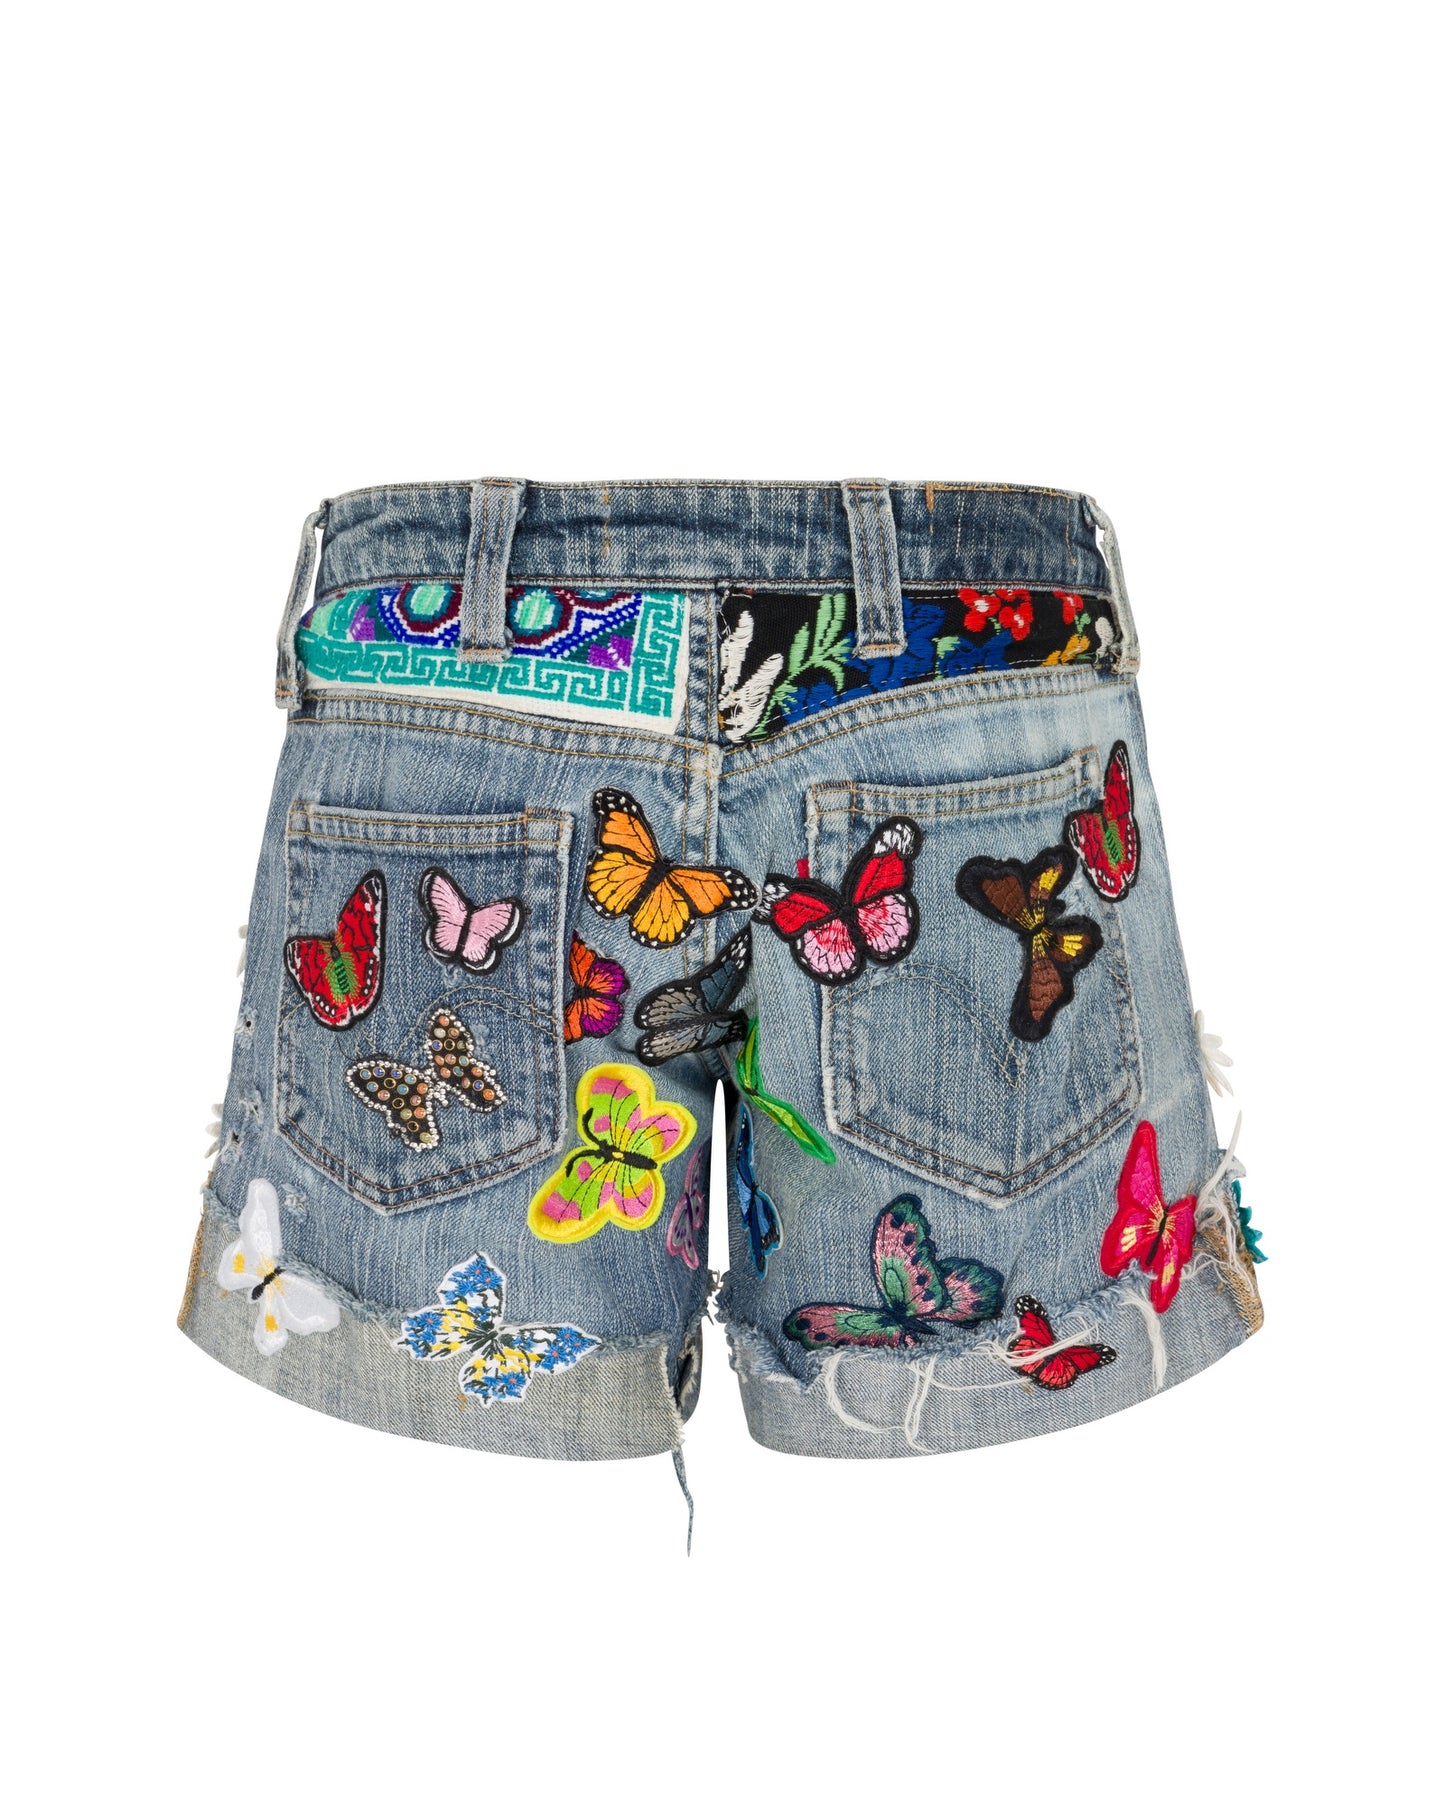 Cali Girl Denim Shorts - Flirty Flutter